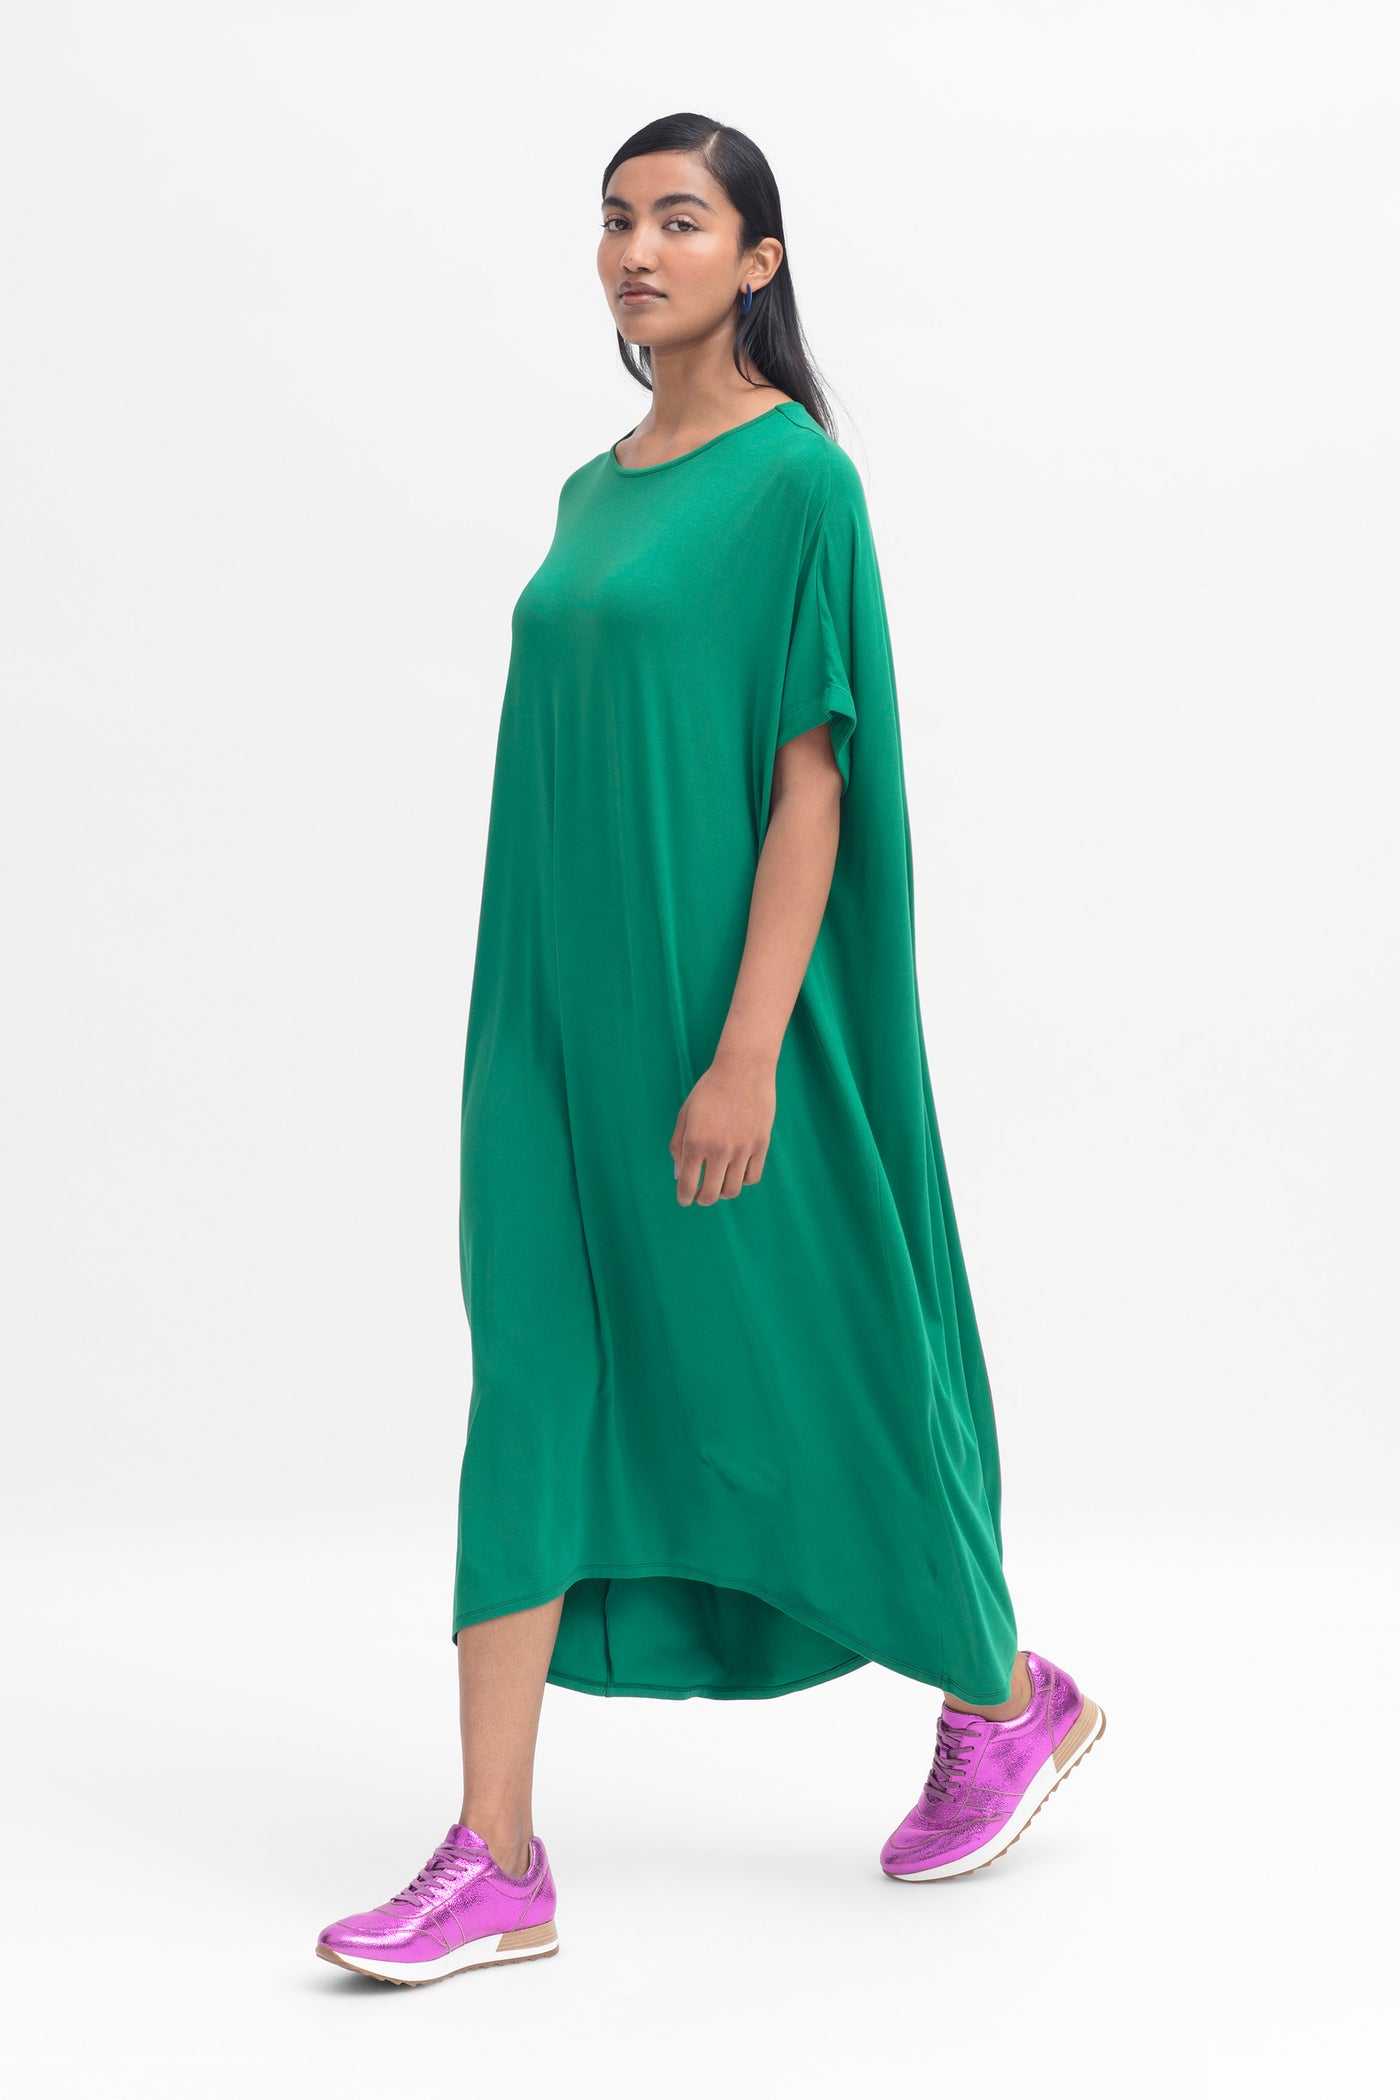 Model wearing cedar green telse dress with pink sneakers